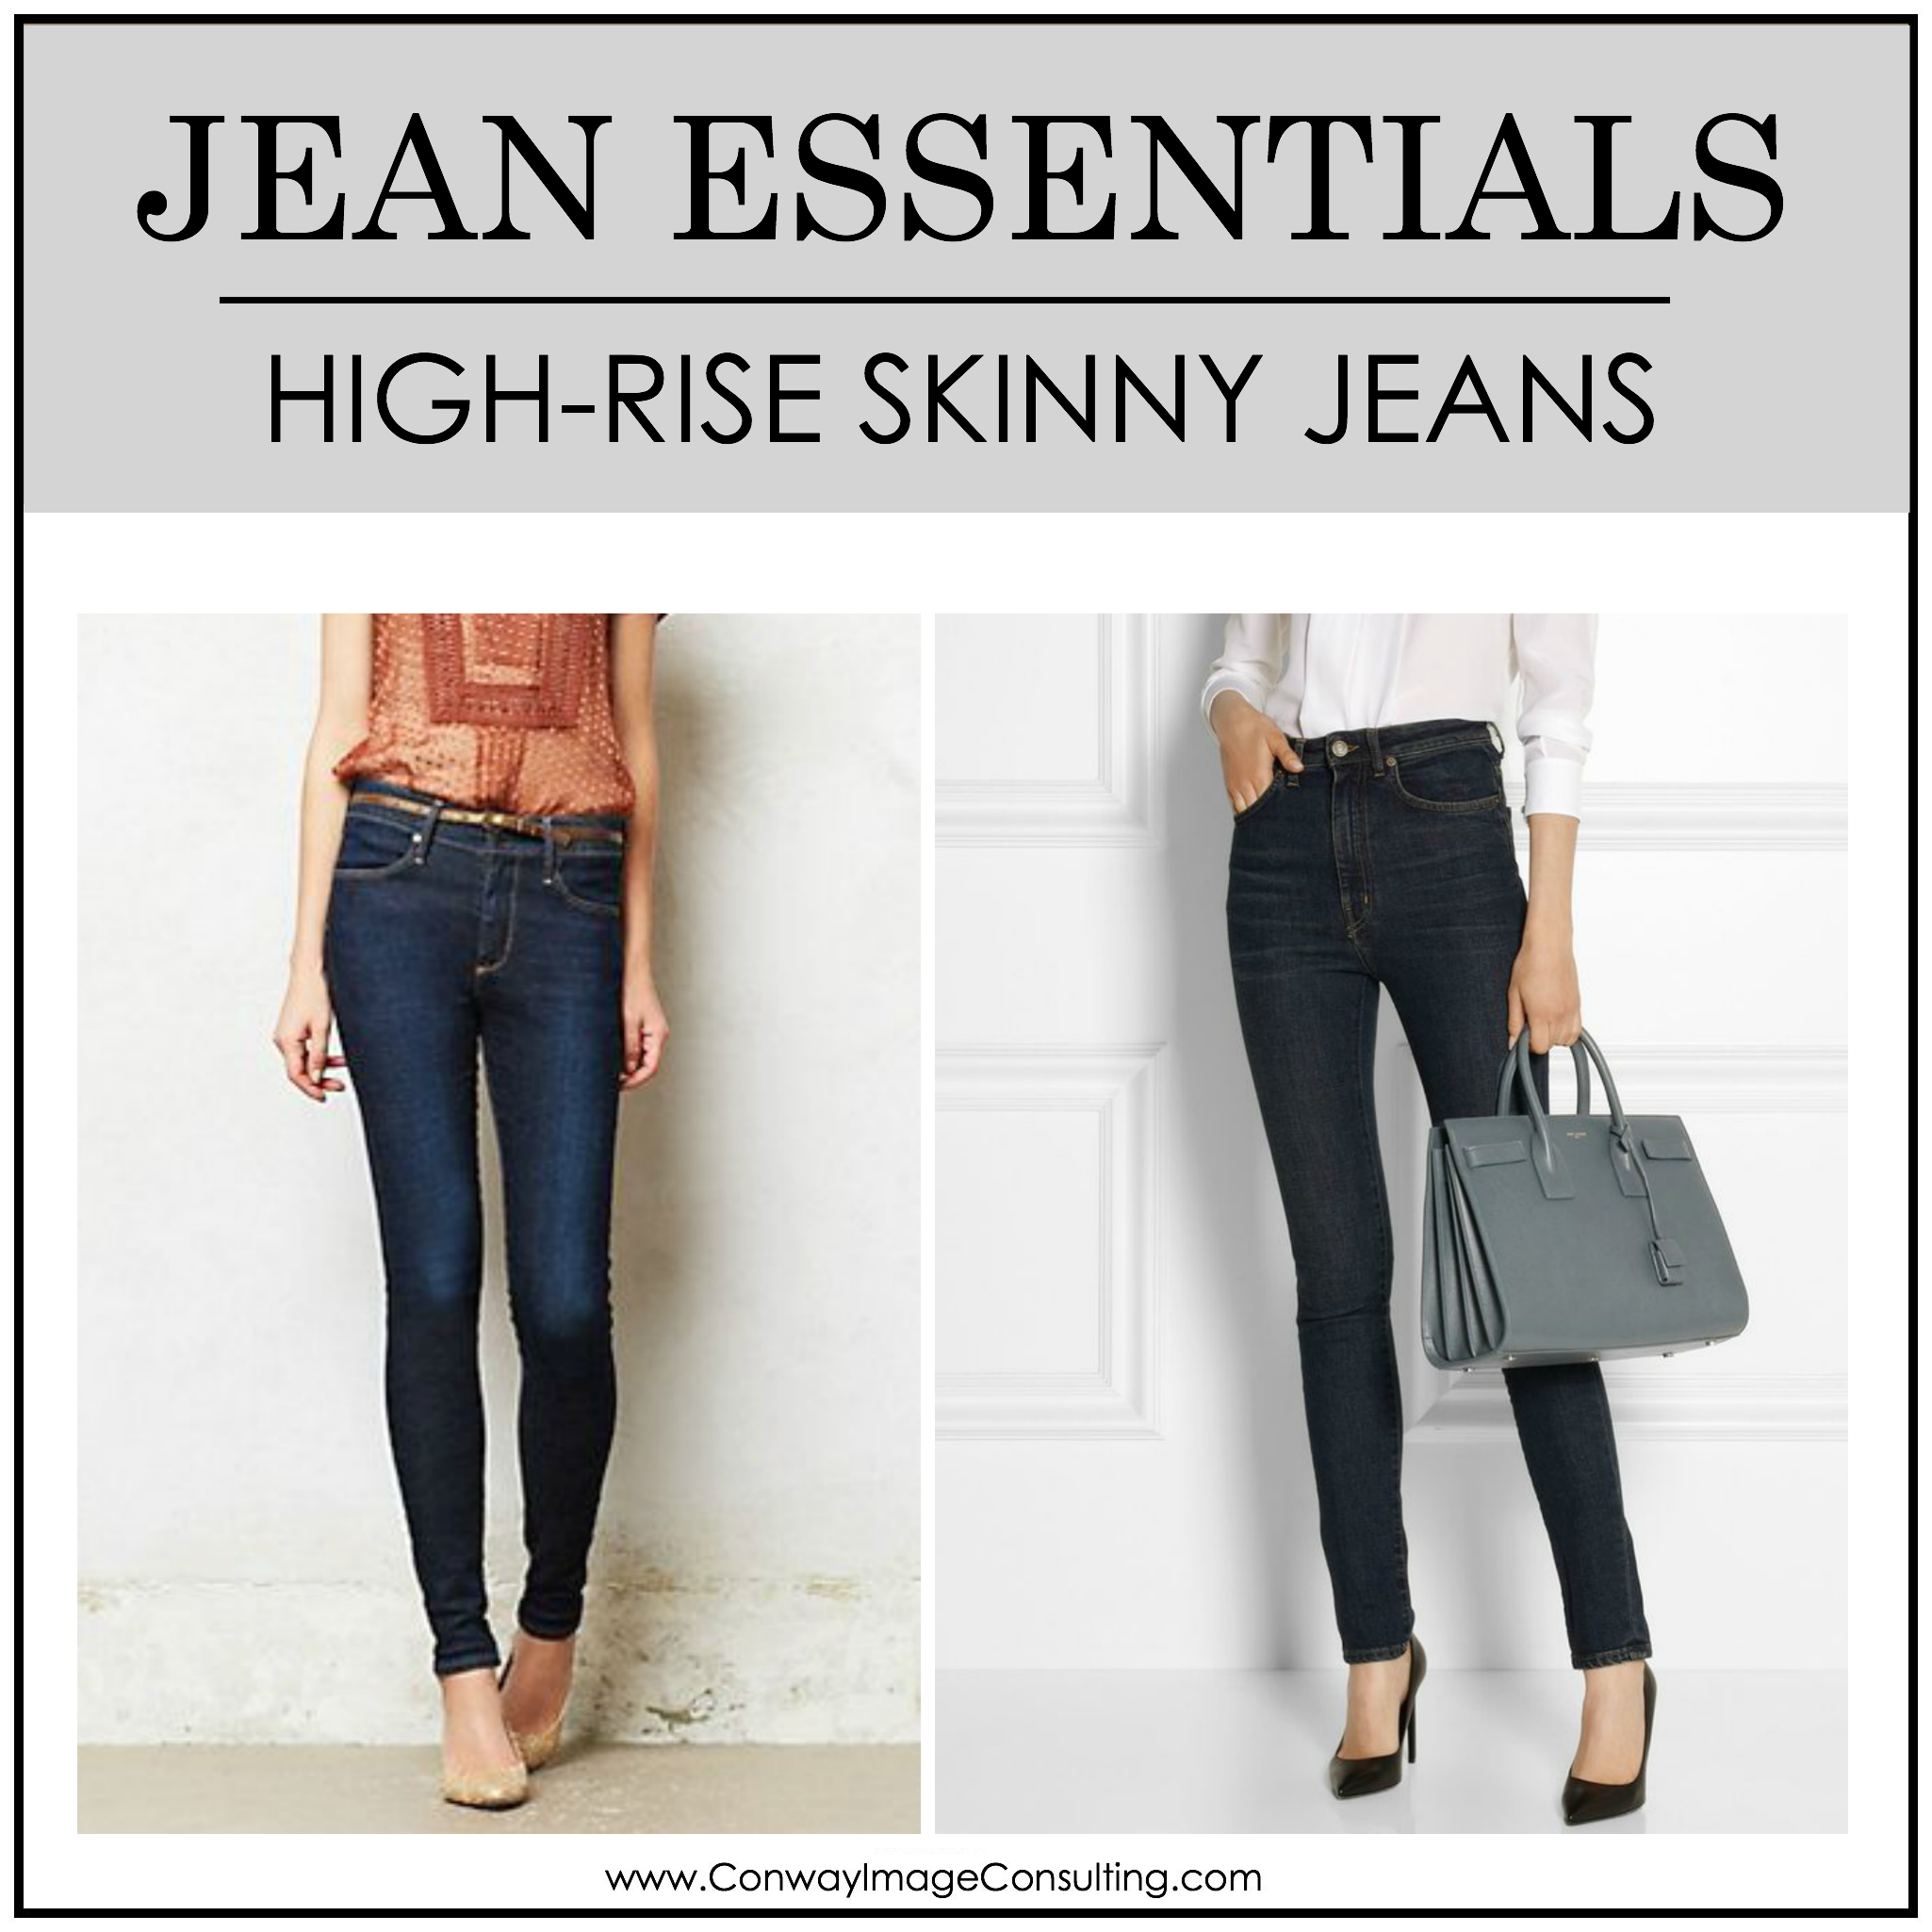 Jean Essentials - High Rise Skinny